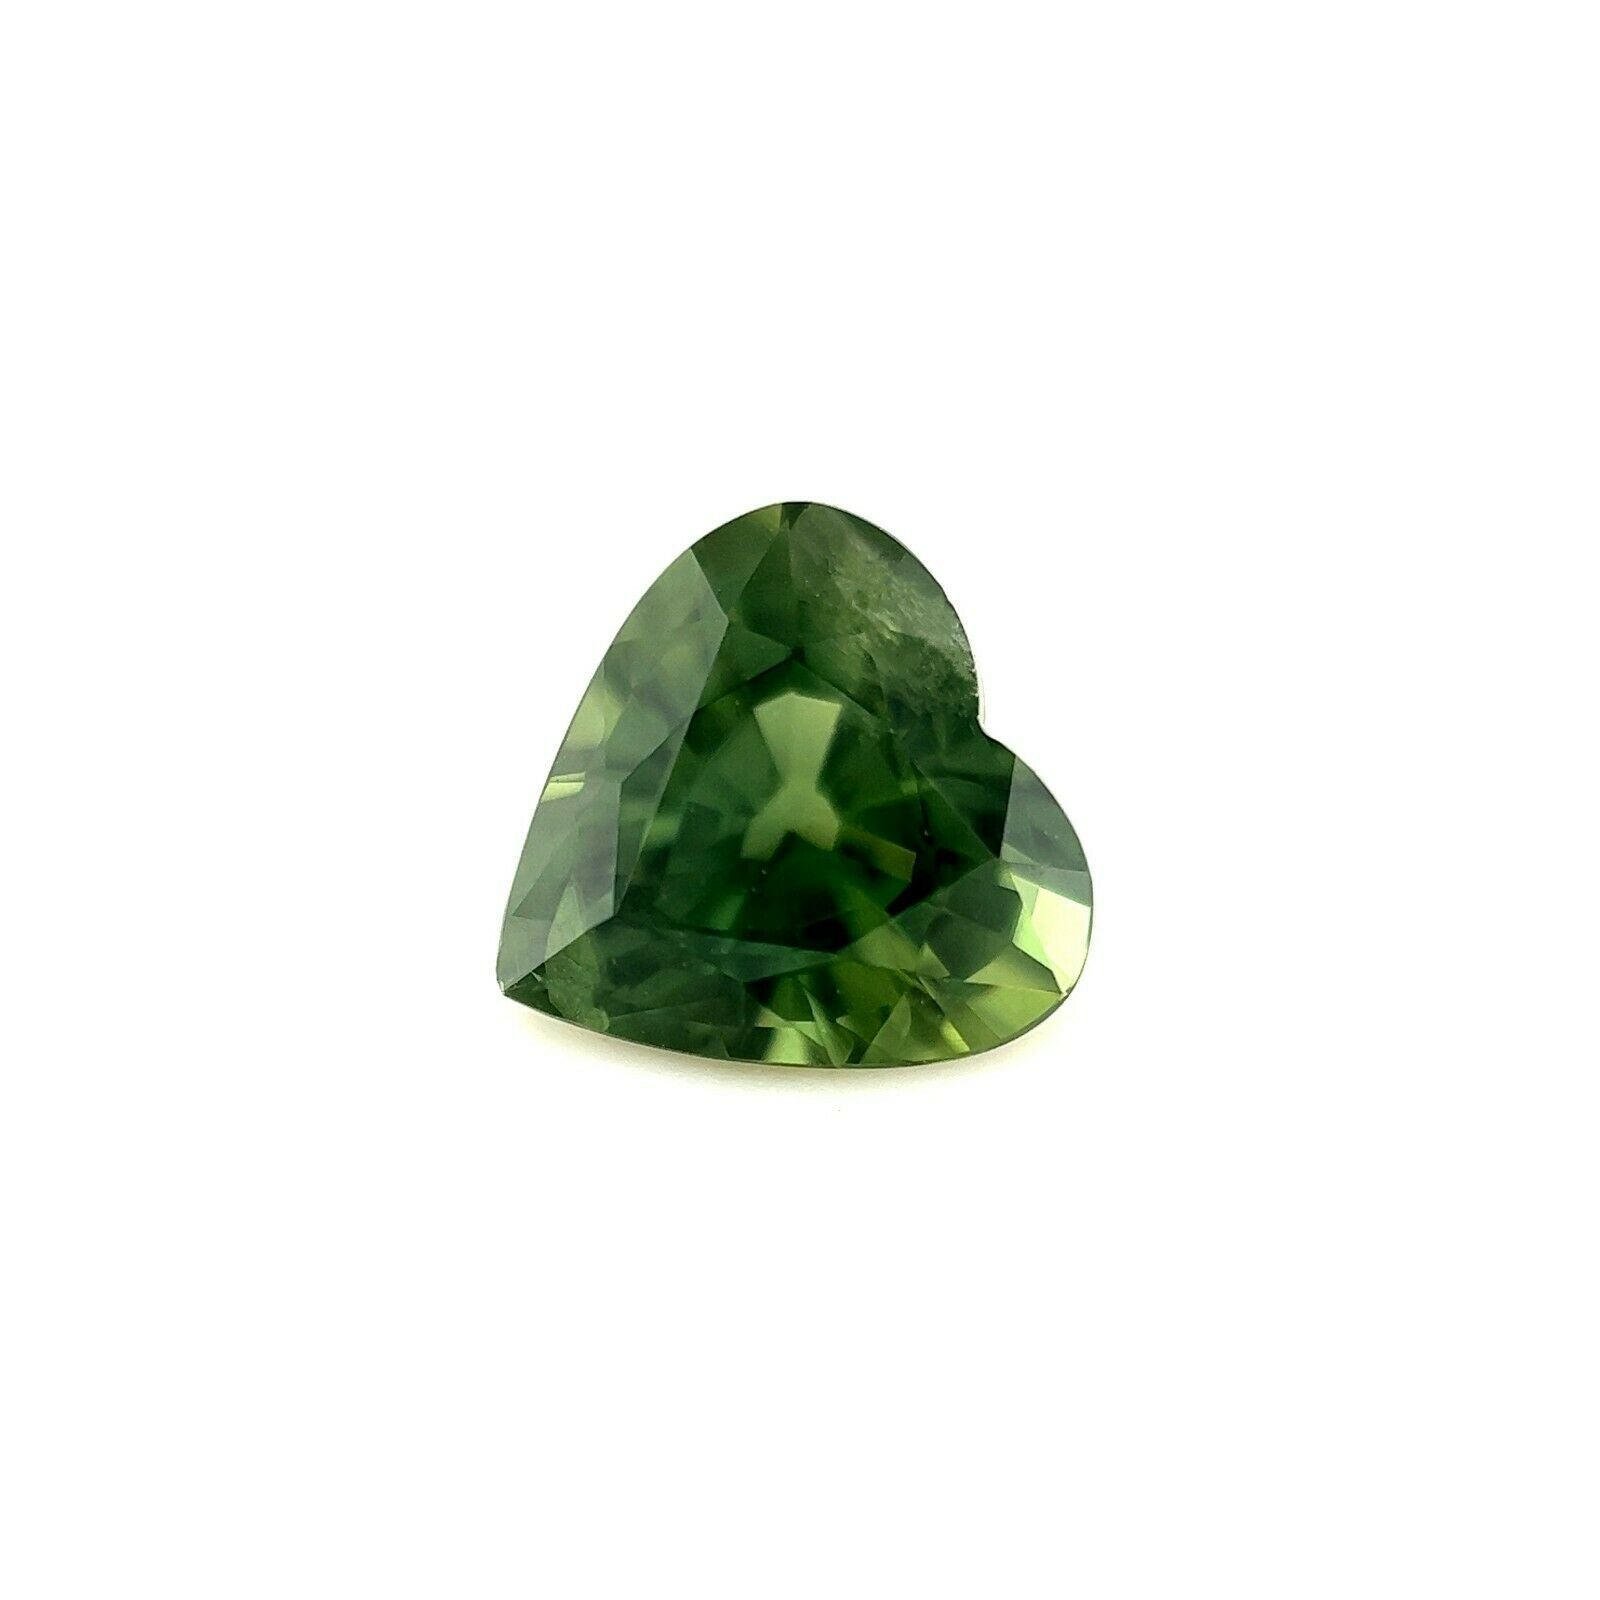 Fine Deep Green Colour Sapphire 1.26ct Heart Cut Rare Loose Gemstone 6.7x6.6mm